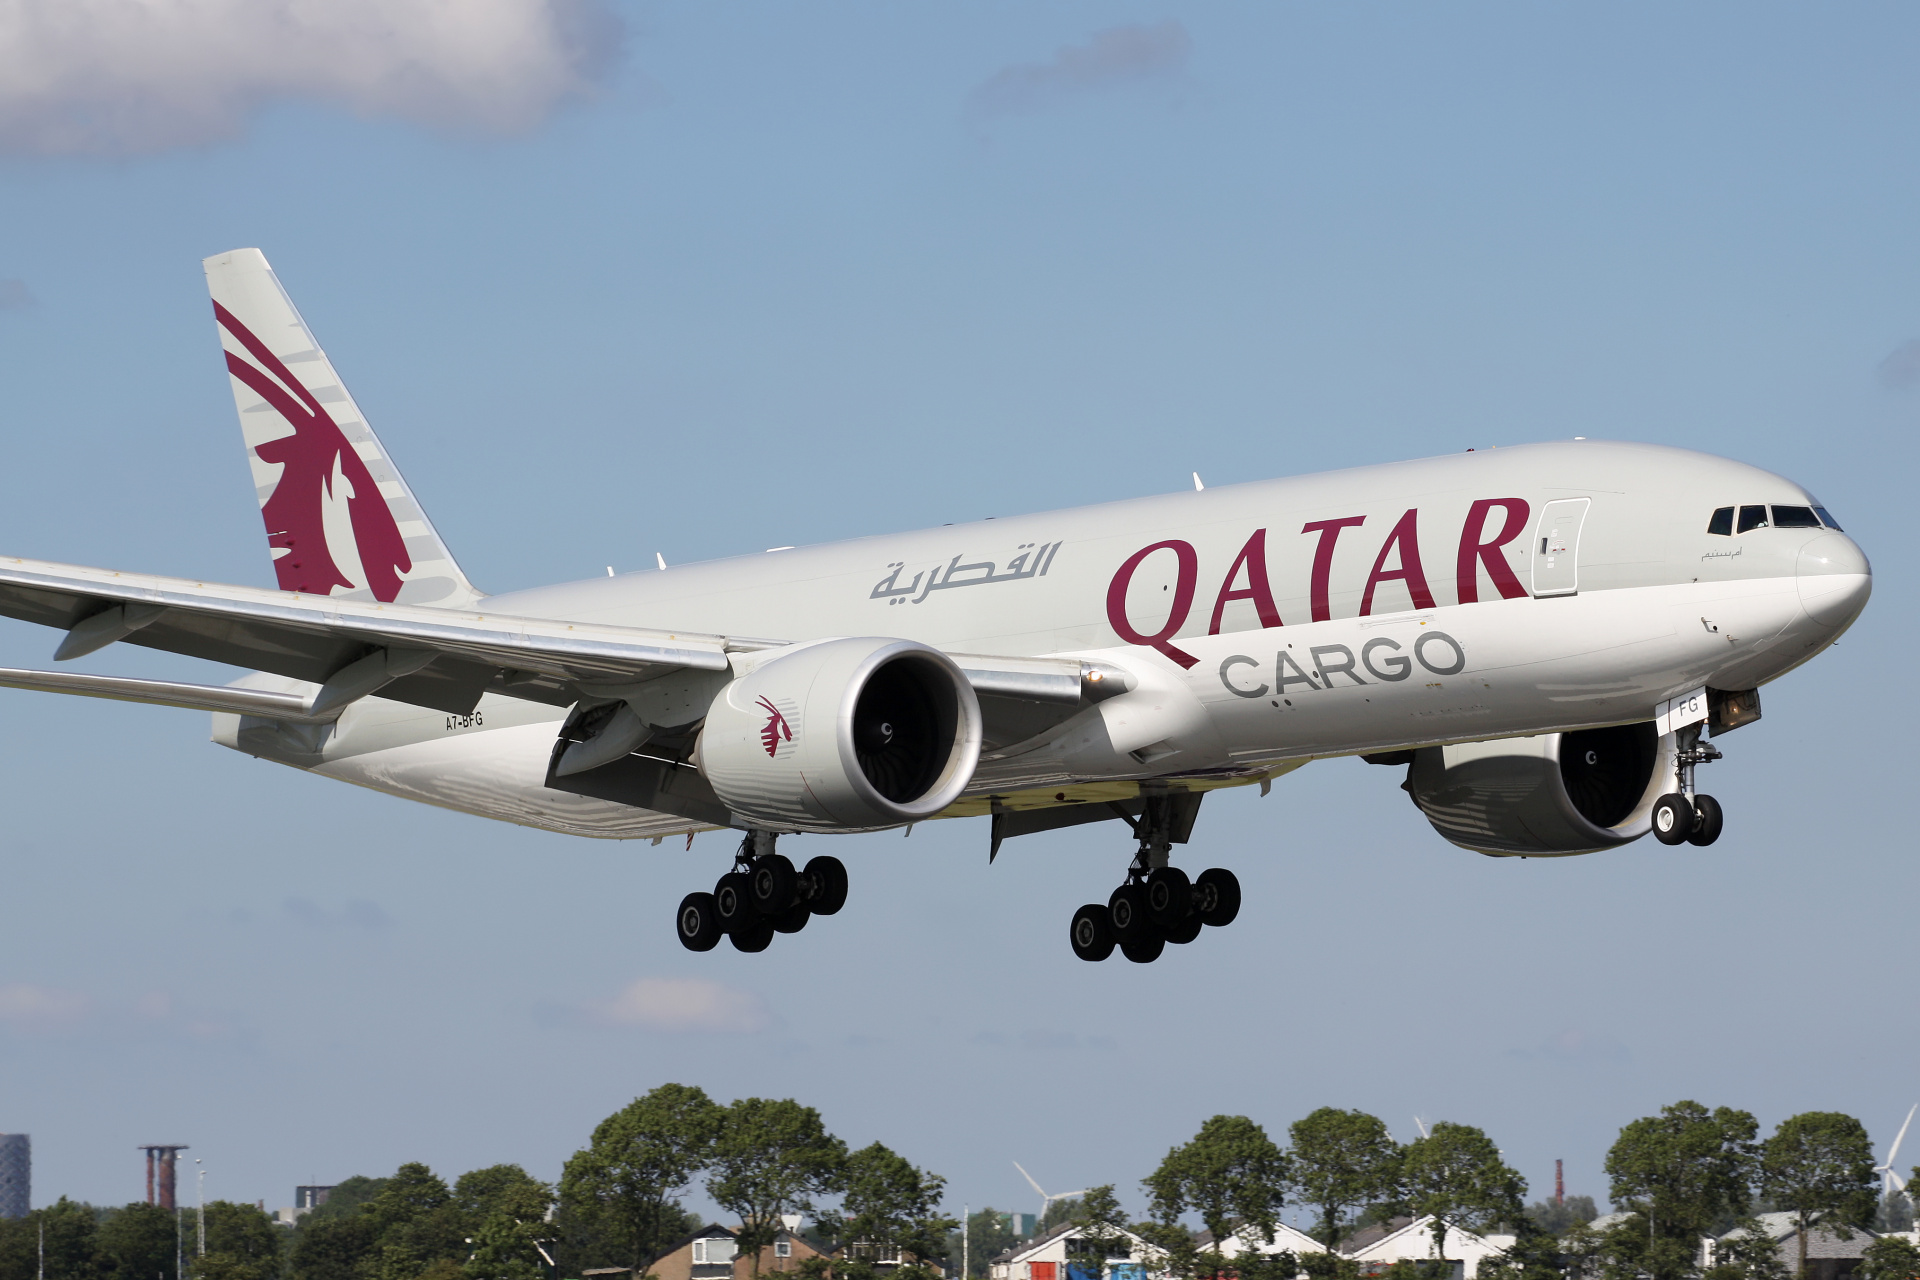 A7-BFG (Aircraft » Schiphol Spotting » Boeing 777F » Qatar Airways Cargo)